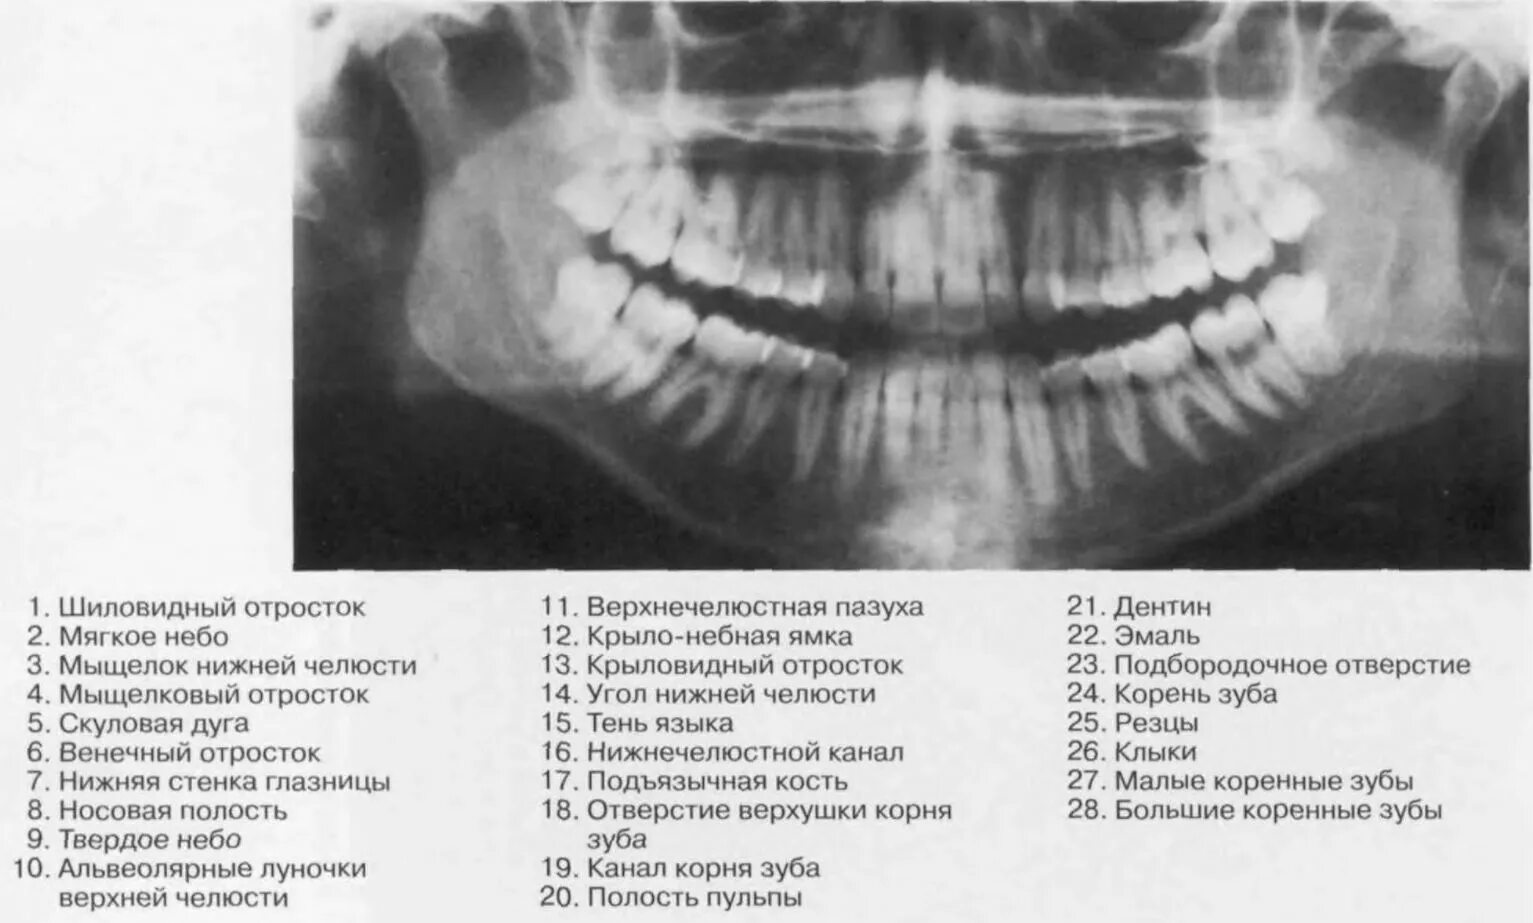 Мыщелкового отростка нижней челюсти. Мыщелковый отросток нижней челюсти рентген. Шиловидный отросток нижней челюсти. Венечный отросток нижней челюсти рентген.